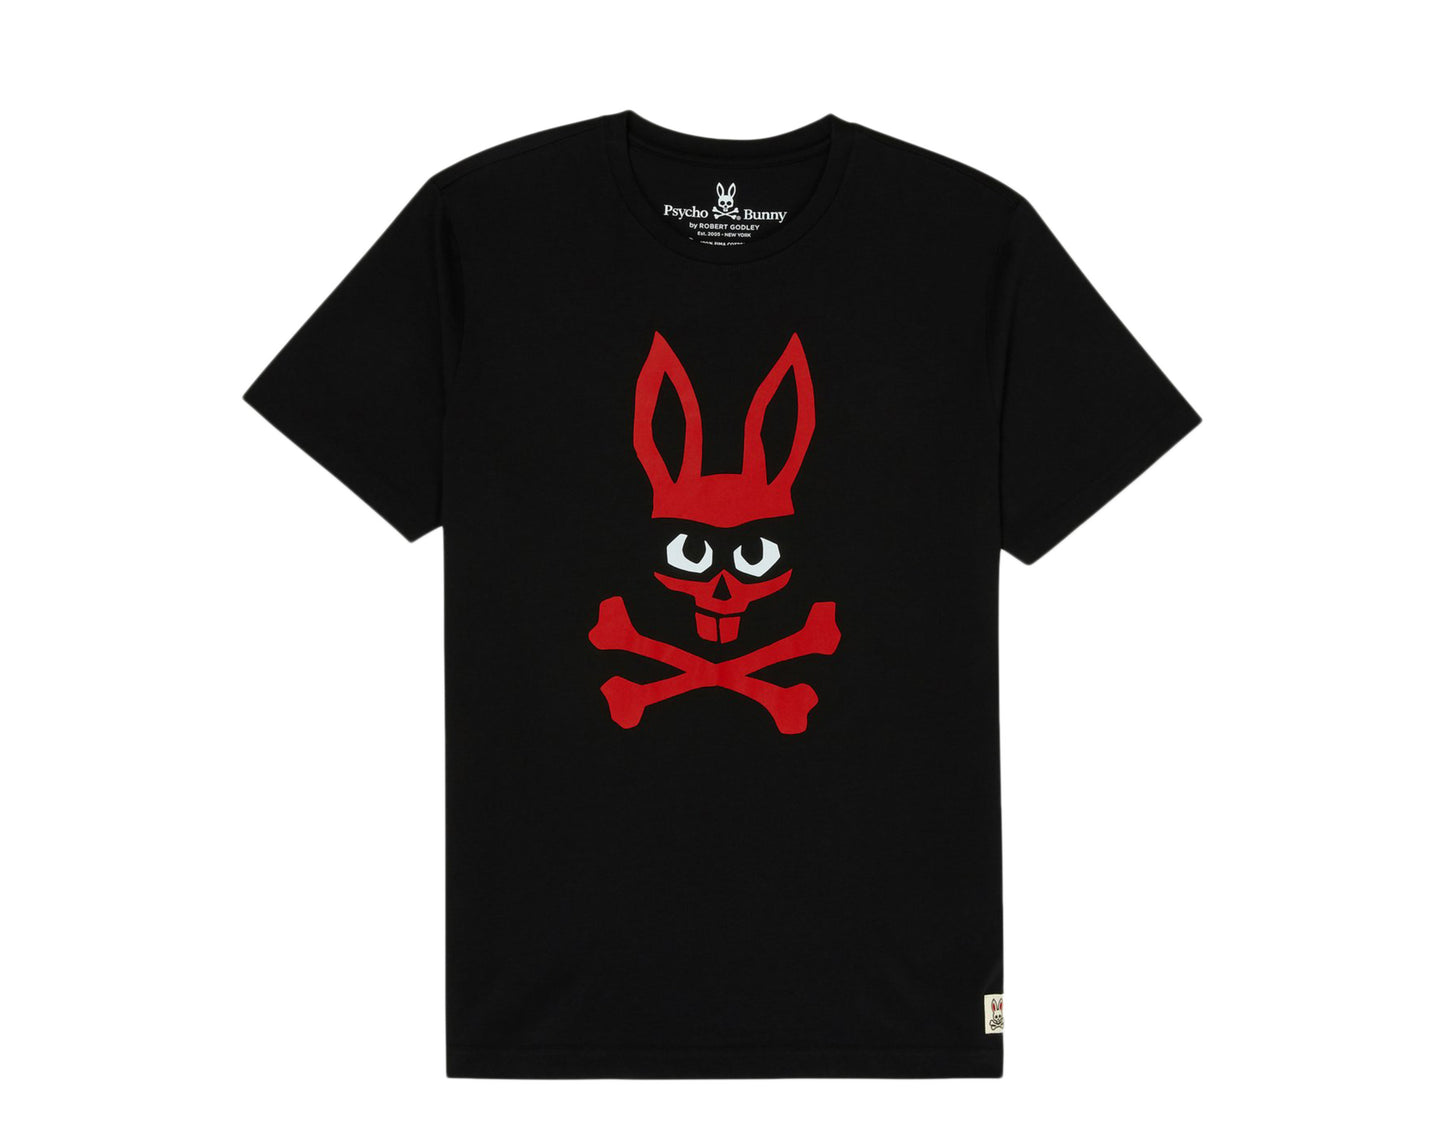 Psycho Bunny Mischief Zorro Bunny Graphic Men's Tee Shirt